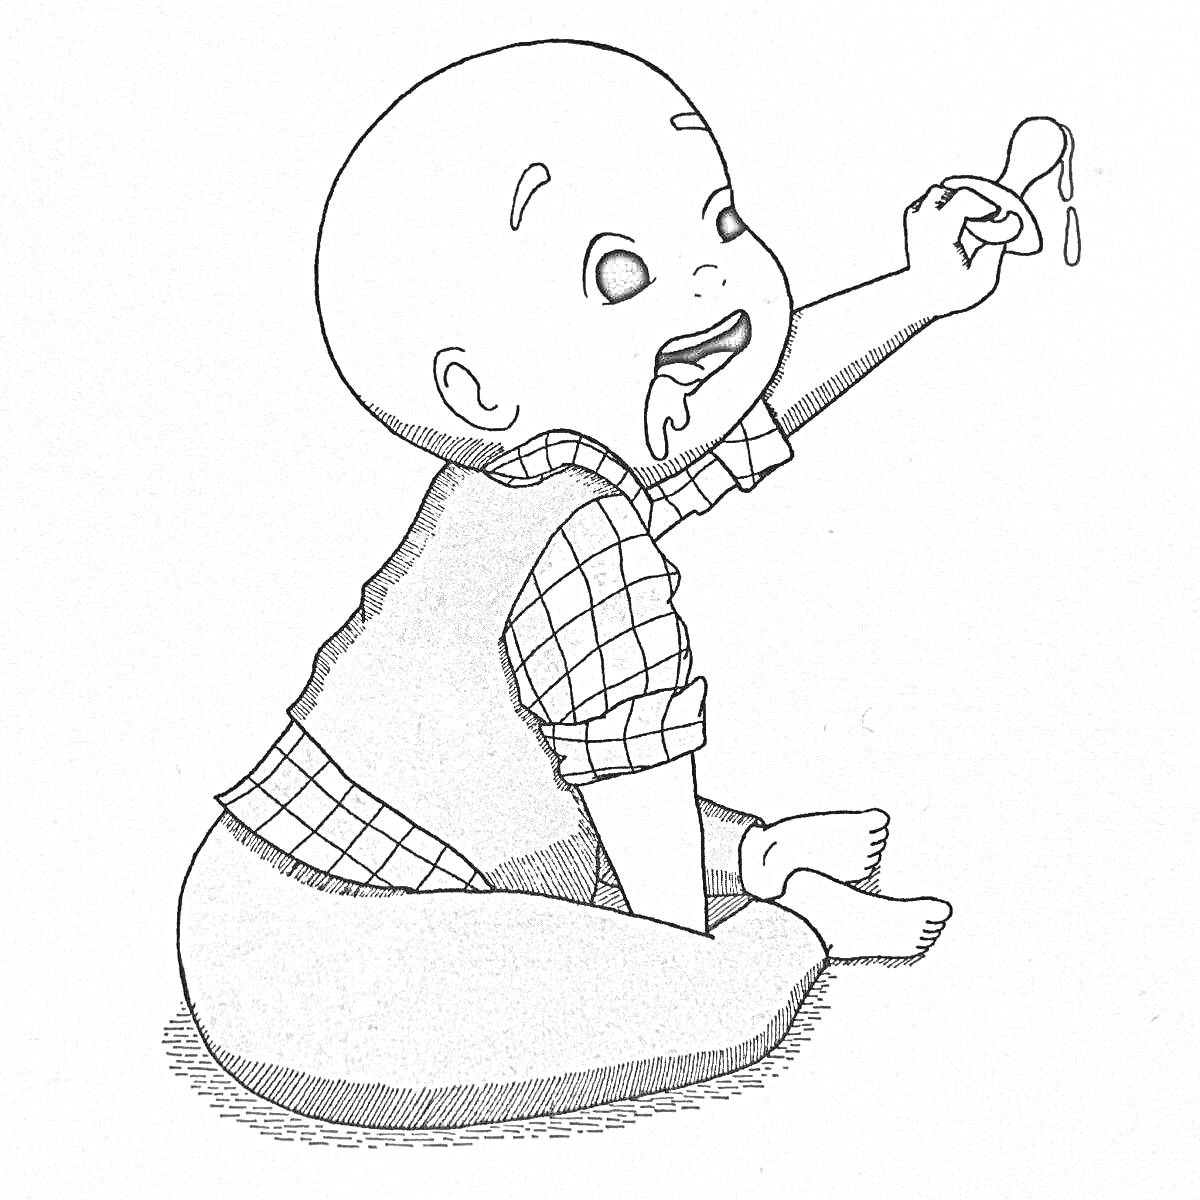 Раскраска Малыш в клетчатой рубашке с подтяжками сидит и держит ложку